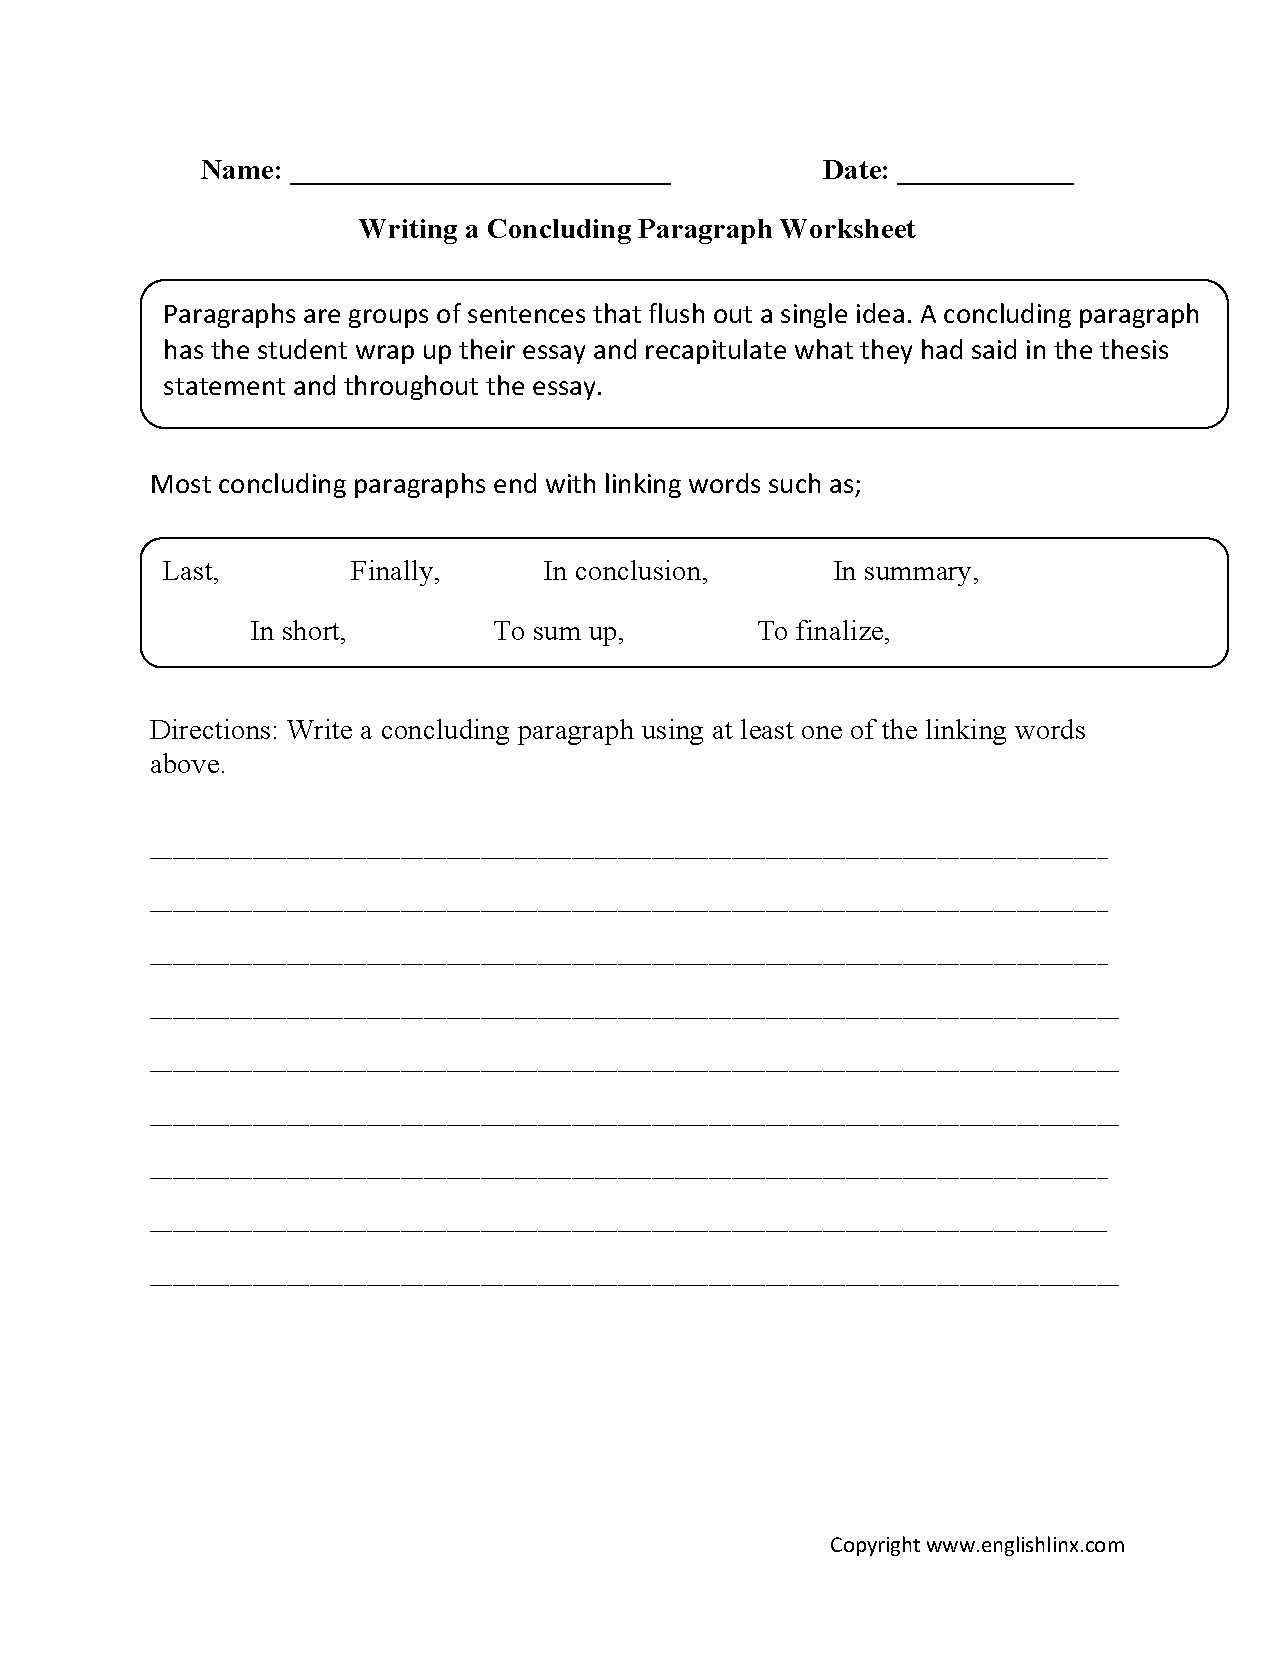 Esl Grammar Worksheets and Esl Writing Tasks Worksheets Save Writing Concluding Paragraph